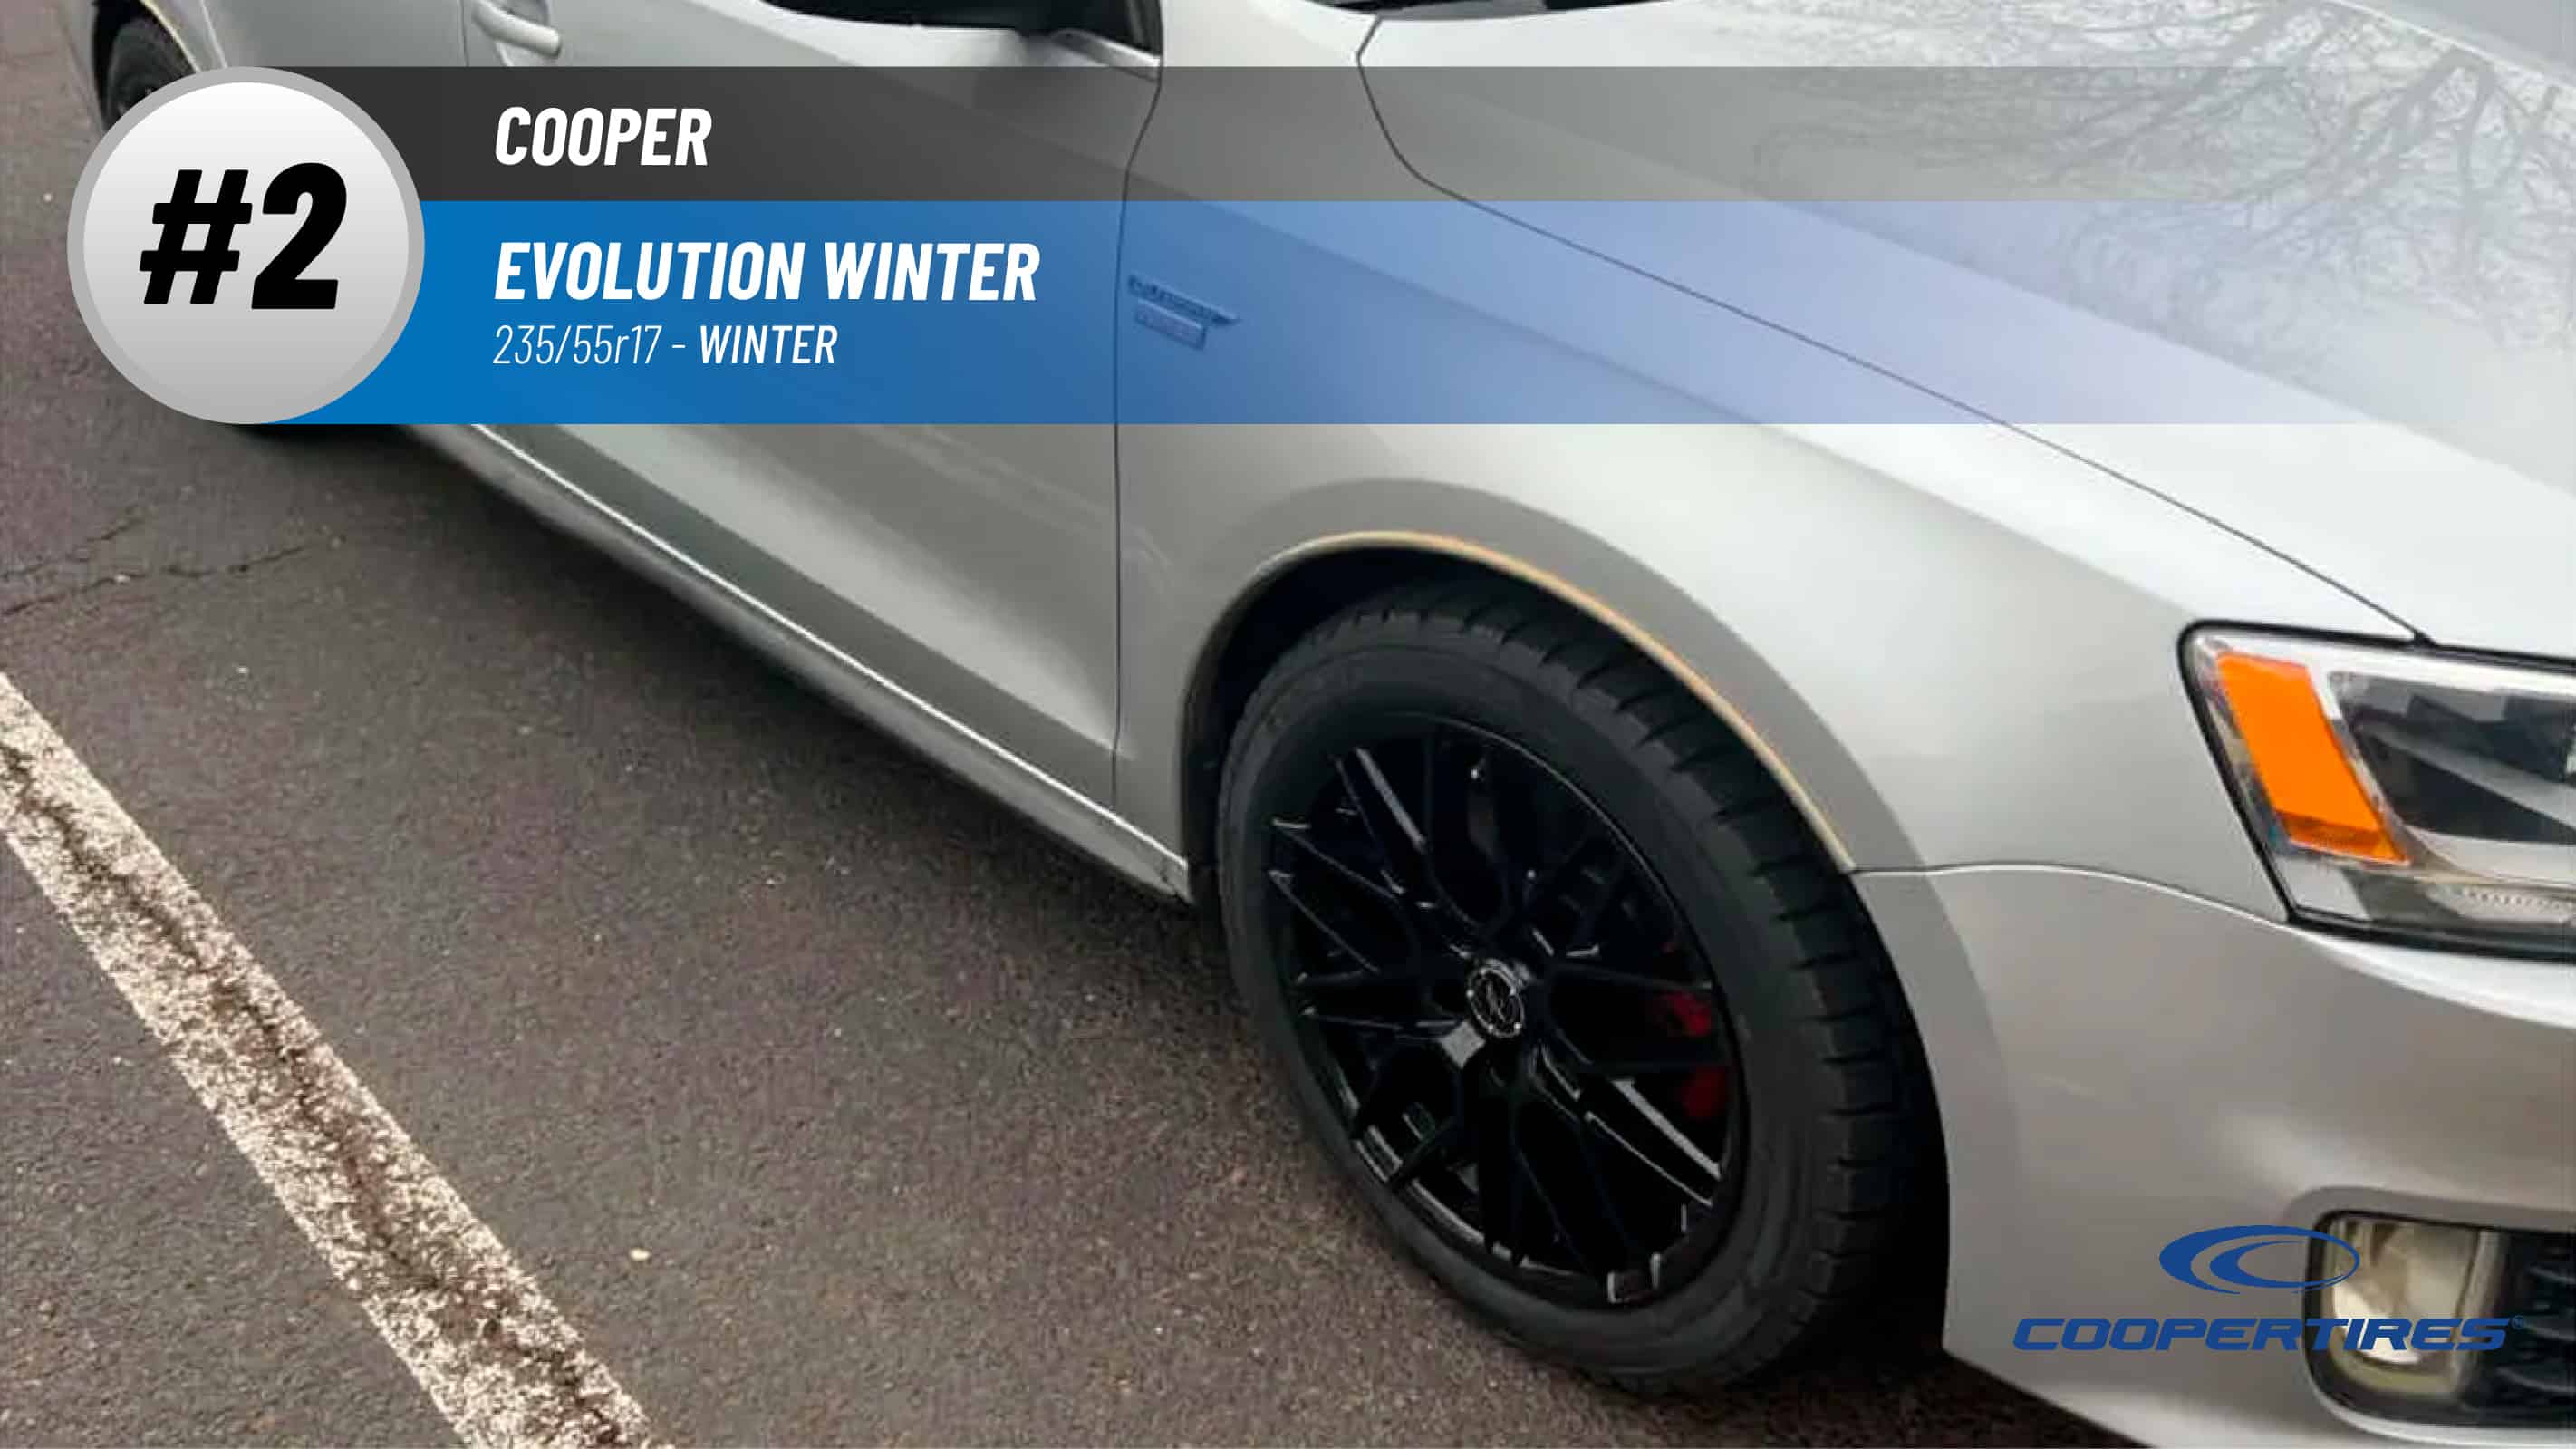 Top #2 Winter Tires: Cooper Evolution Winter – best 235/55r17